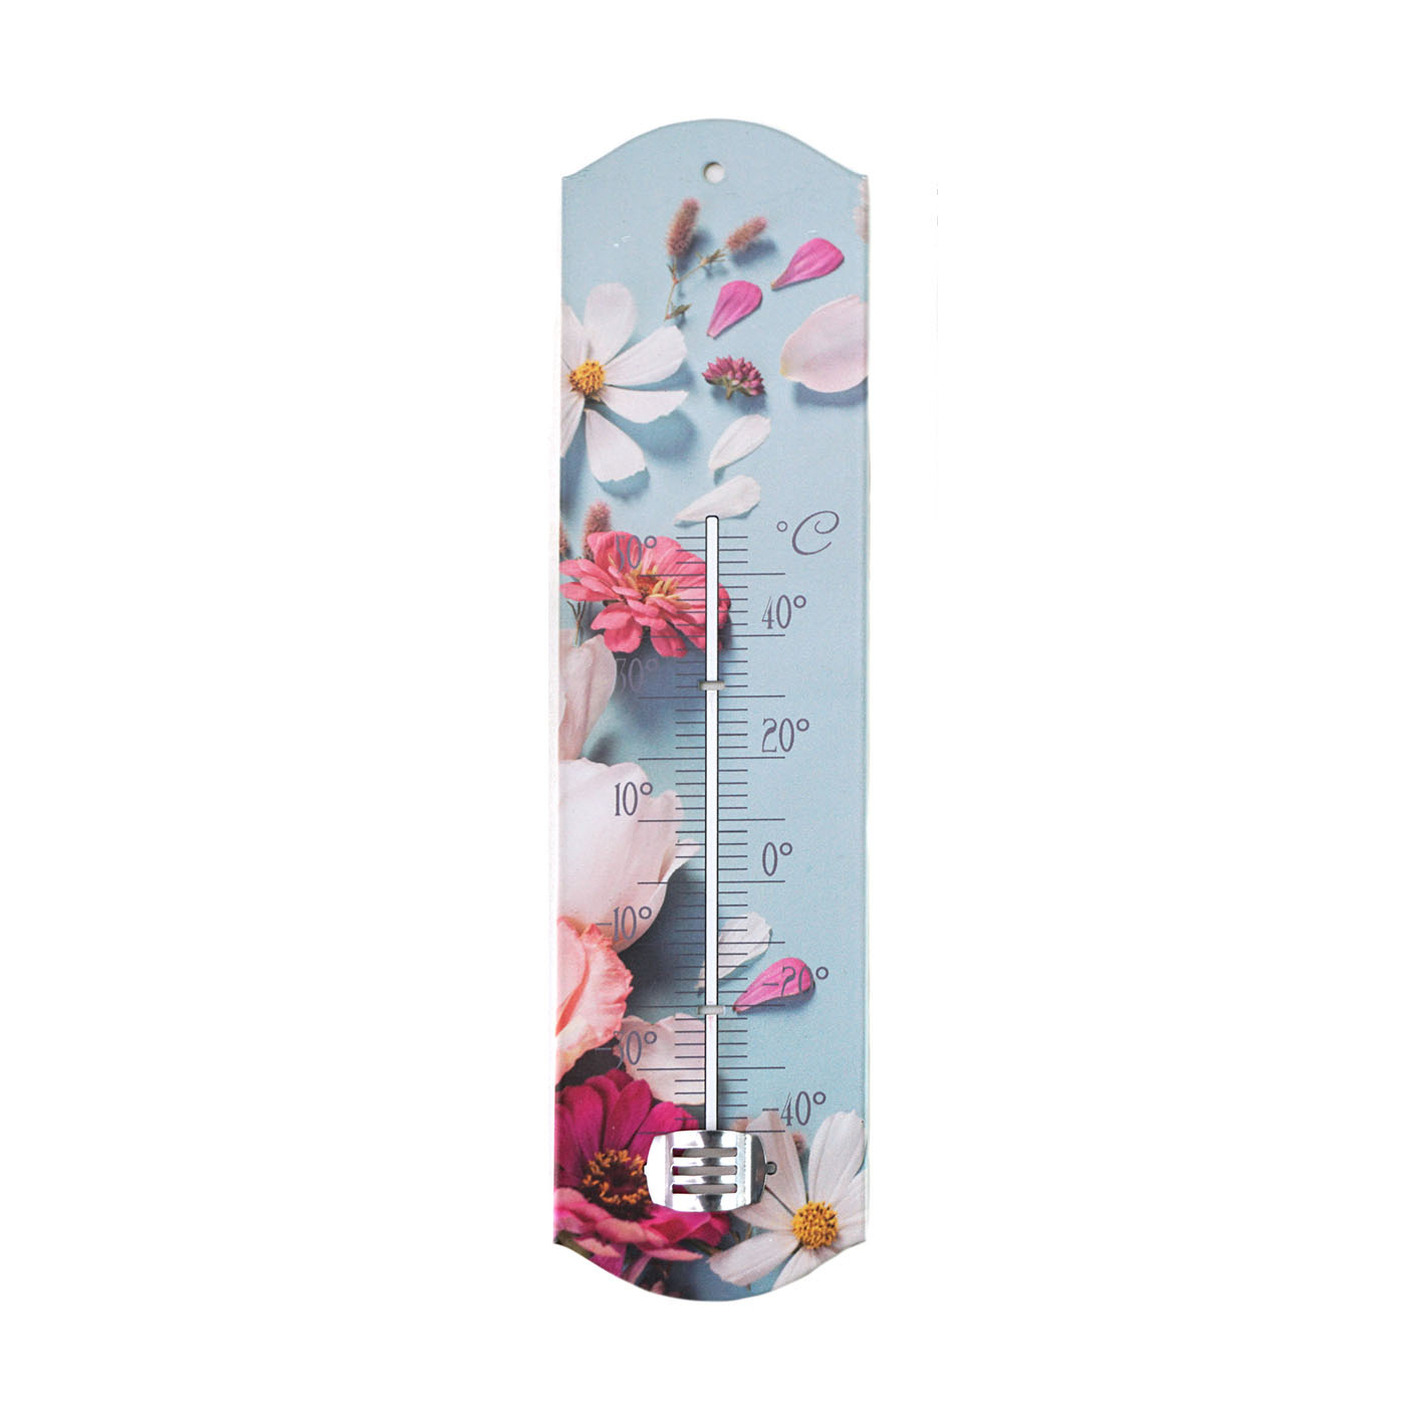 Binnen-buiten thermometer met lentebloemen print blauw-roze metaal 29 x 6.5 cm